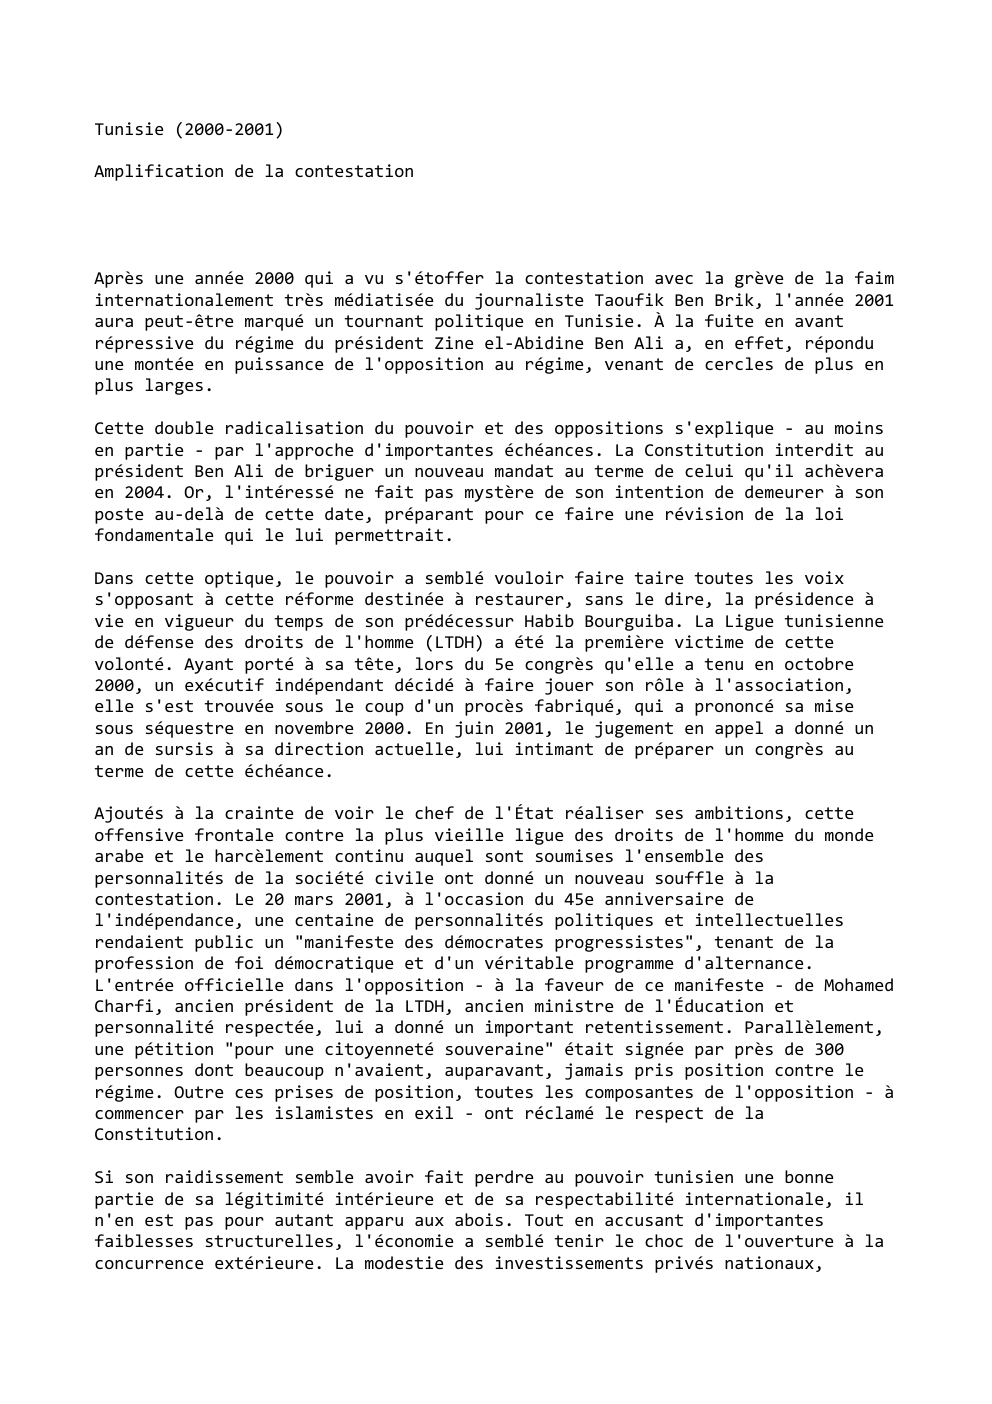 Prévisualisation du document Tunisie (2000-2001)
Amplification de la contestation

Après une année 2000 qui a vu s'étoffer la contestation avec la grève de...